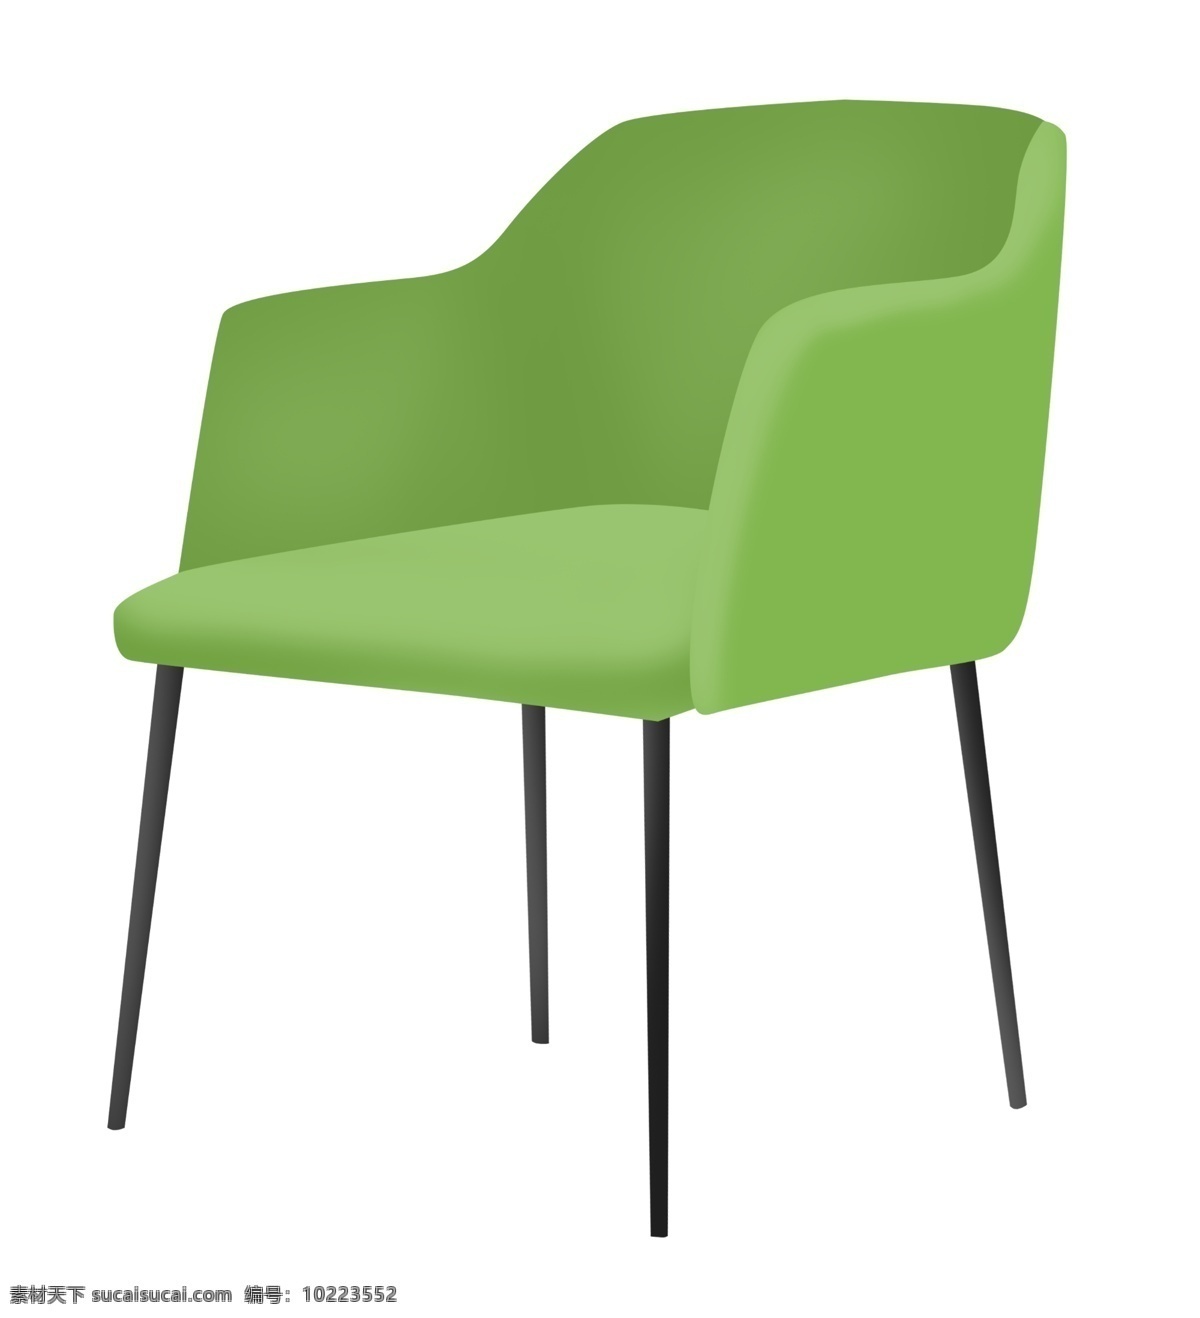 绿色 椅子 家具 插画 绿色的椅子 卡通插画 椅子插画 家具插画 家具椅子 凳子座位 漂亮的椅子